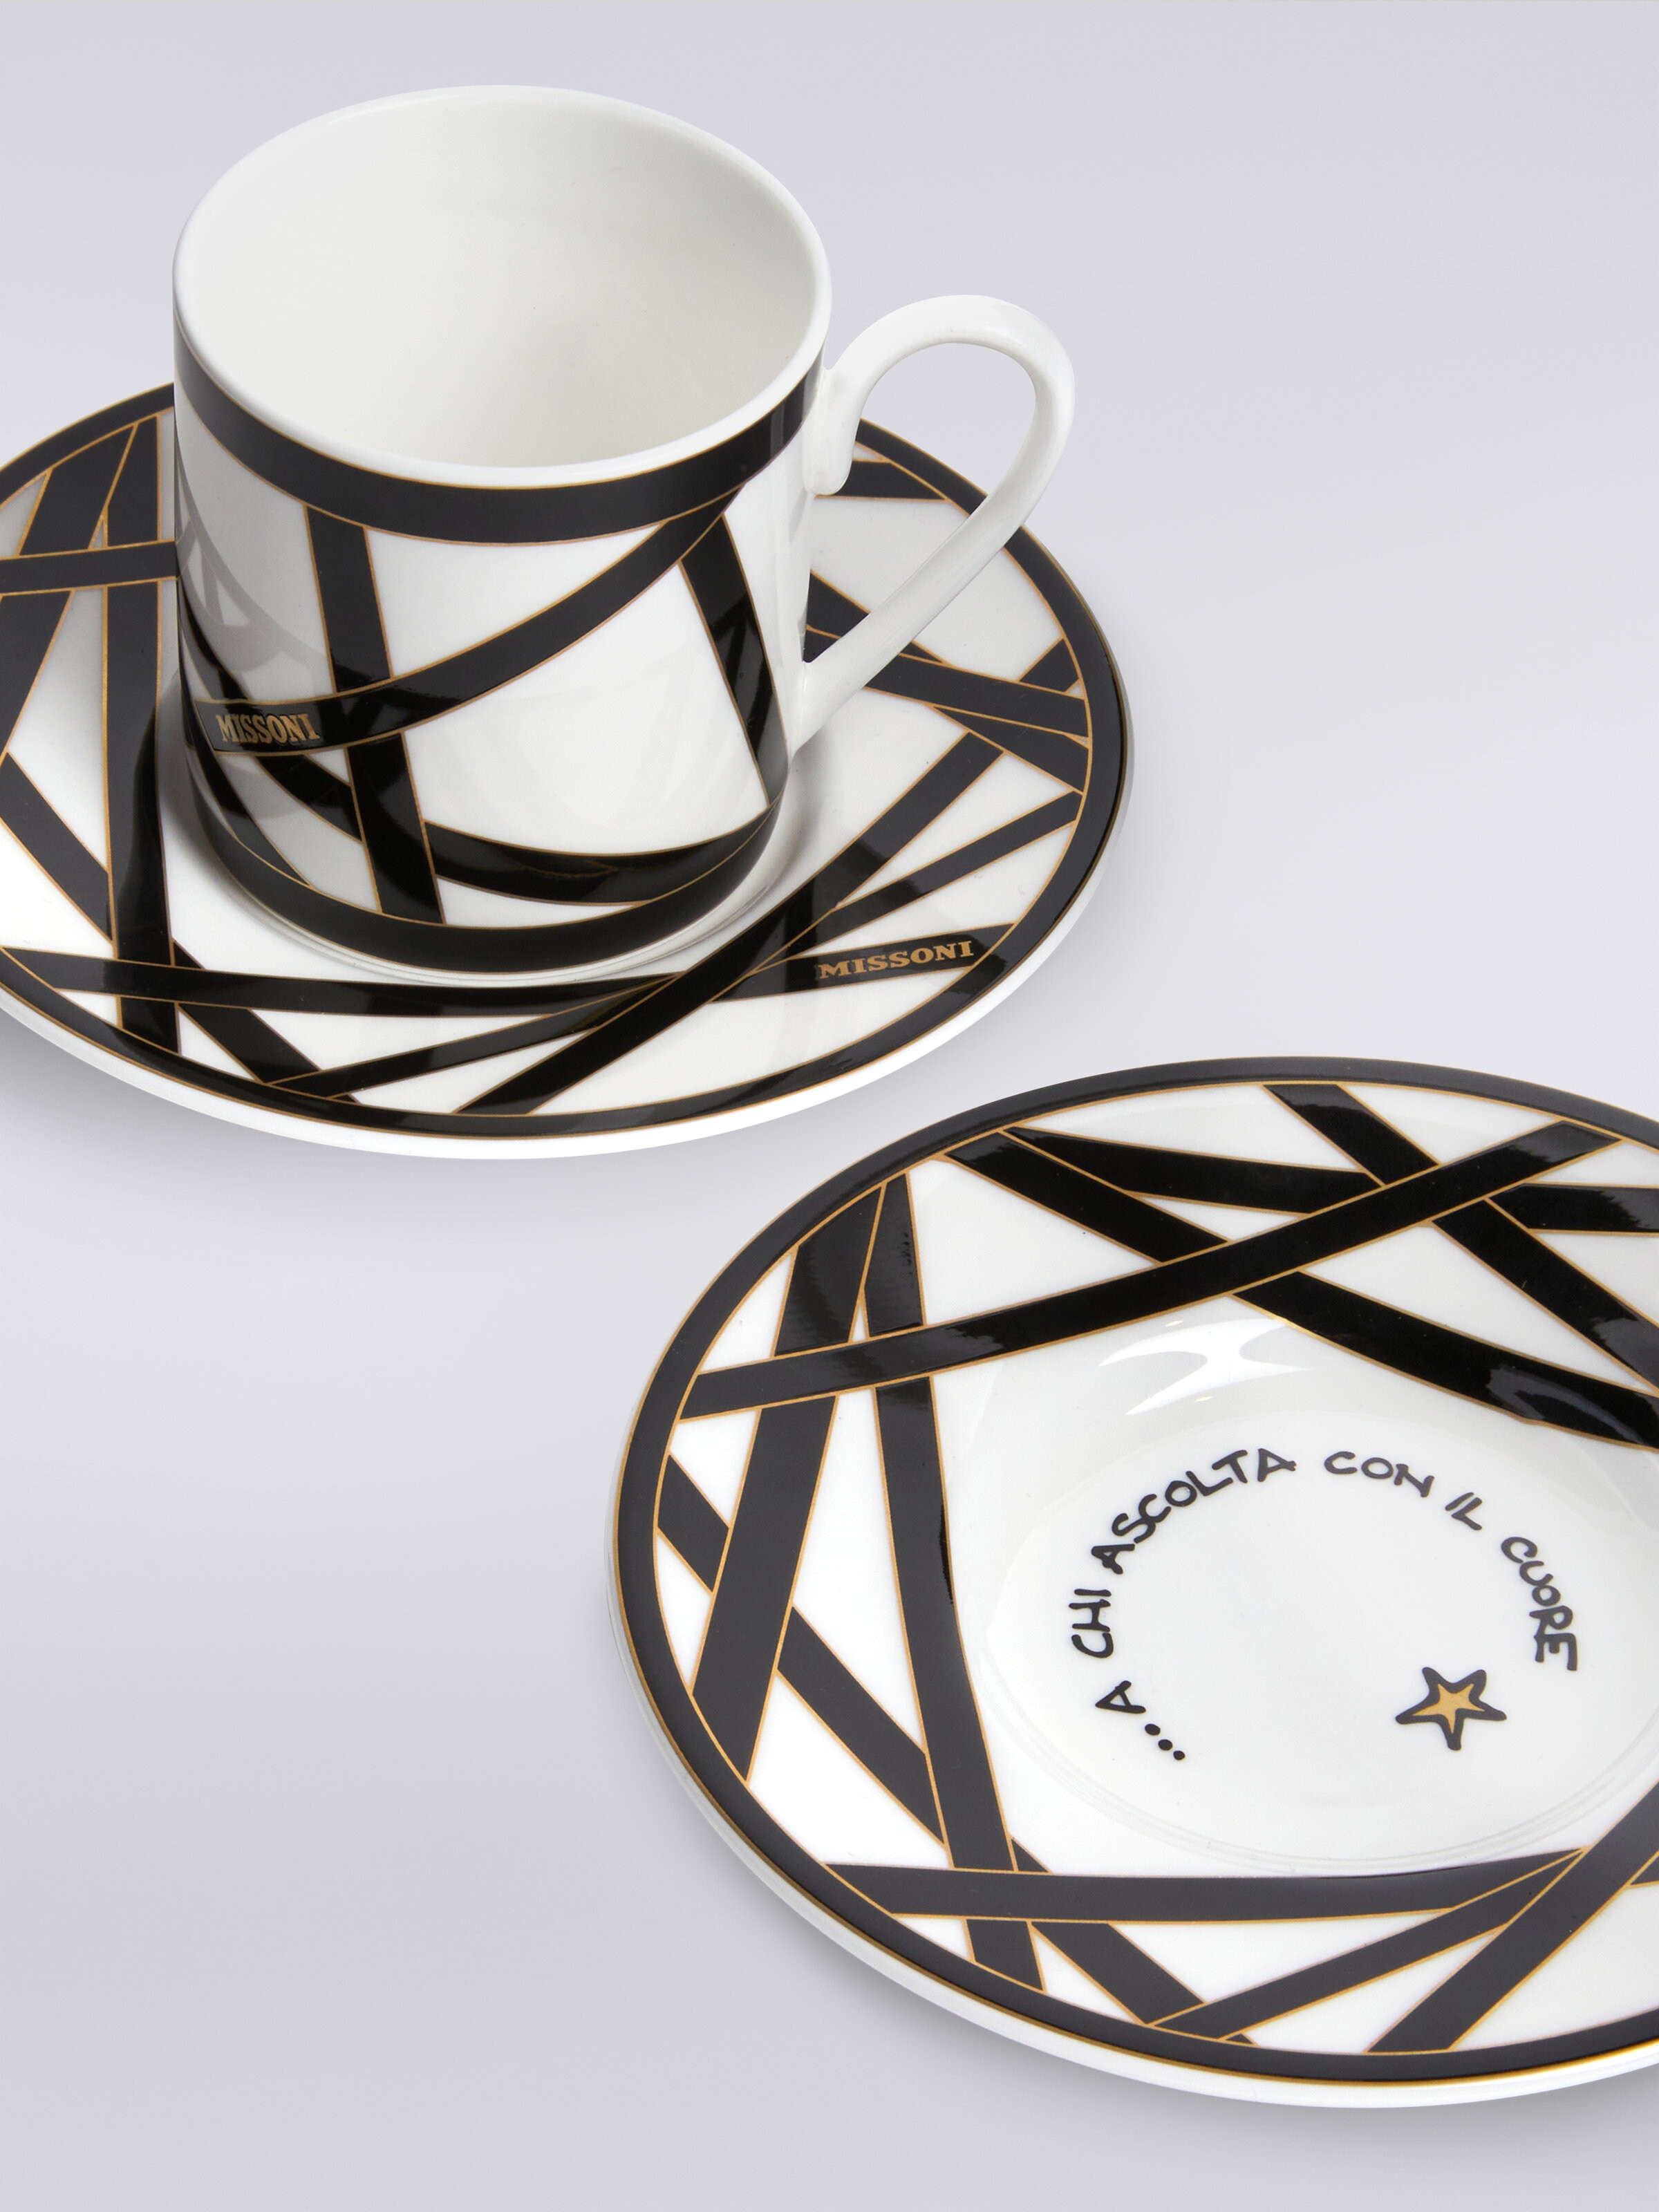 Missoni x Suonare Stella coffee cup and saucer set, Black & Multicoloured  - 3